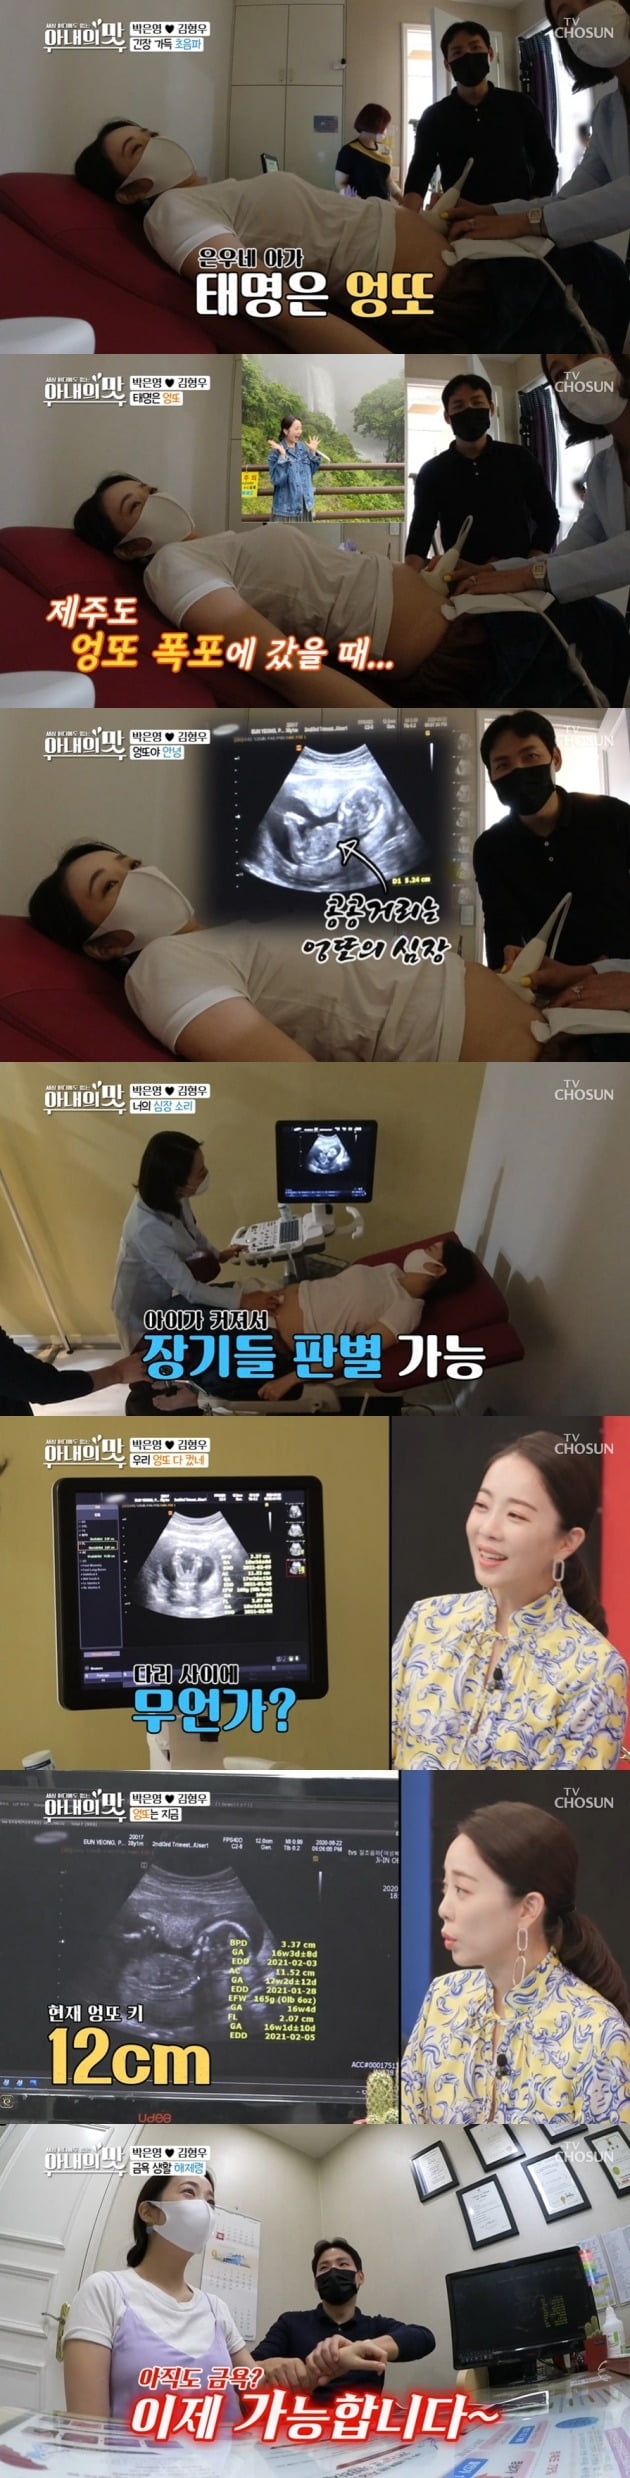 박은영 아나운서가 임신 소식을 알렸다. / 사진=TV조선 '아내의 맛' 캡처